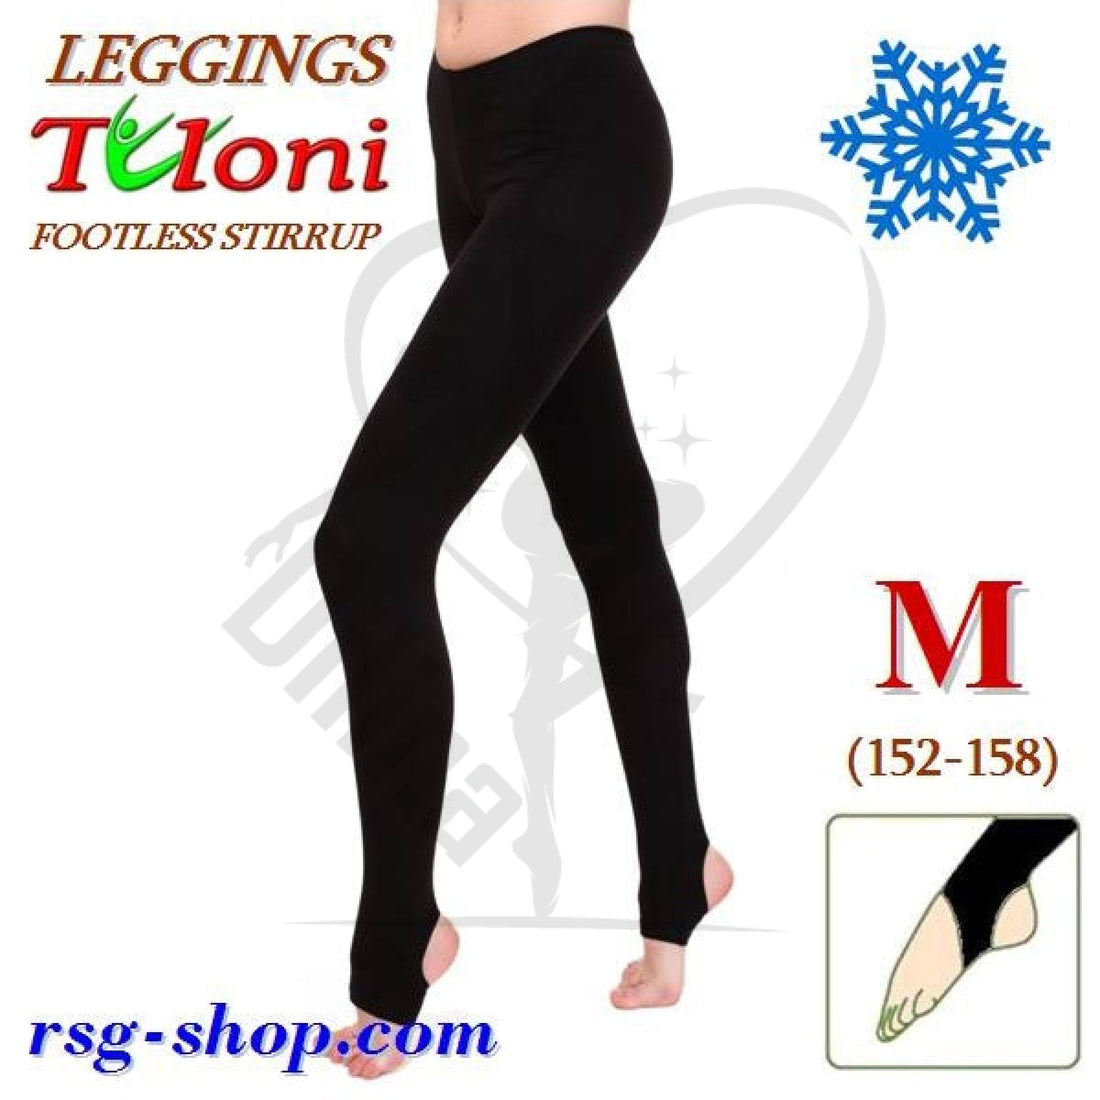 Tuloni Stirrup Winter Leggings M (152-158)